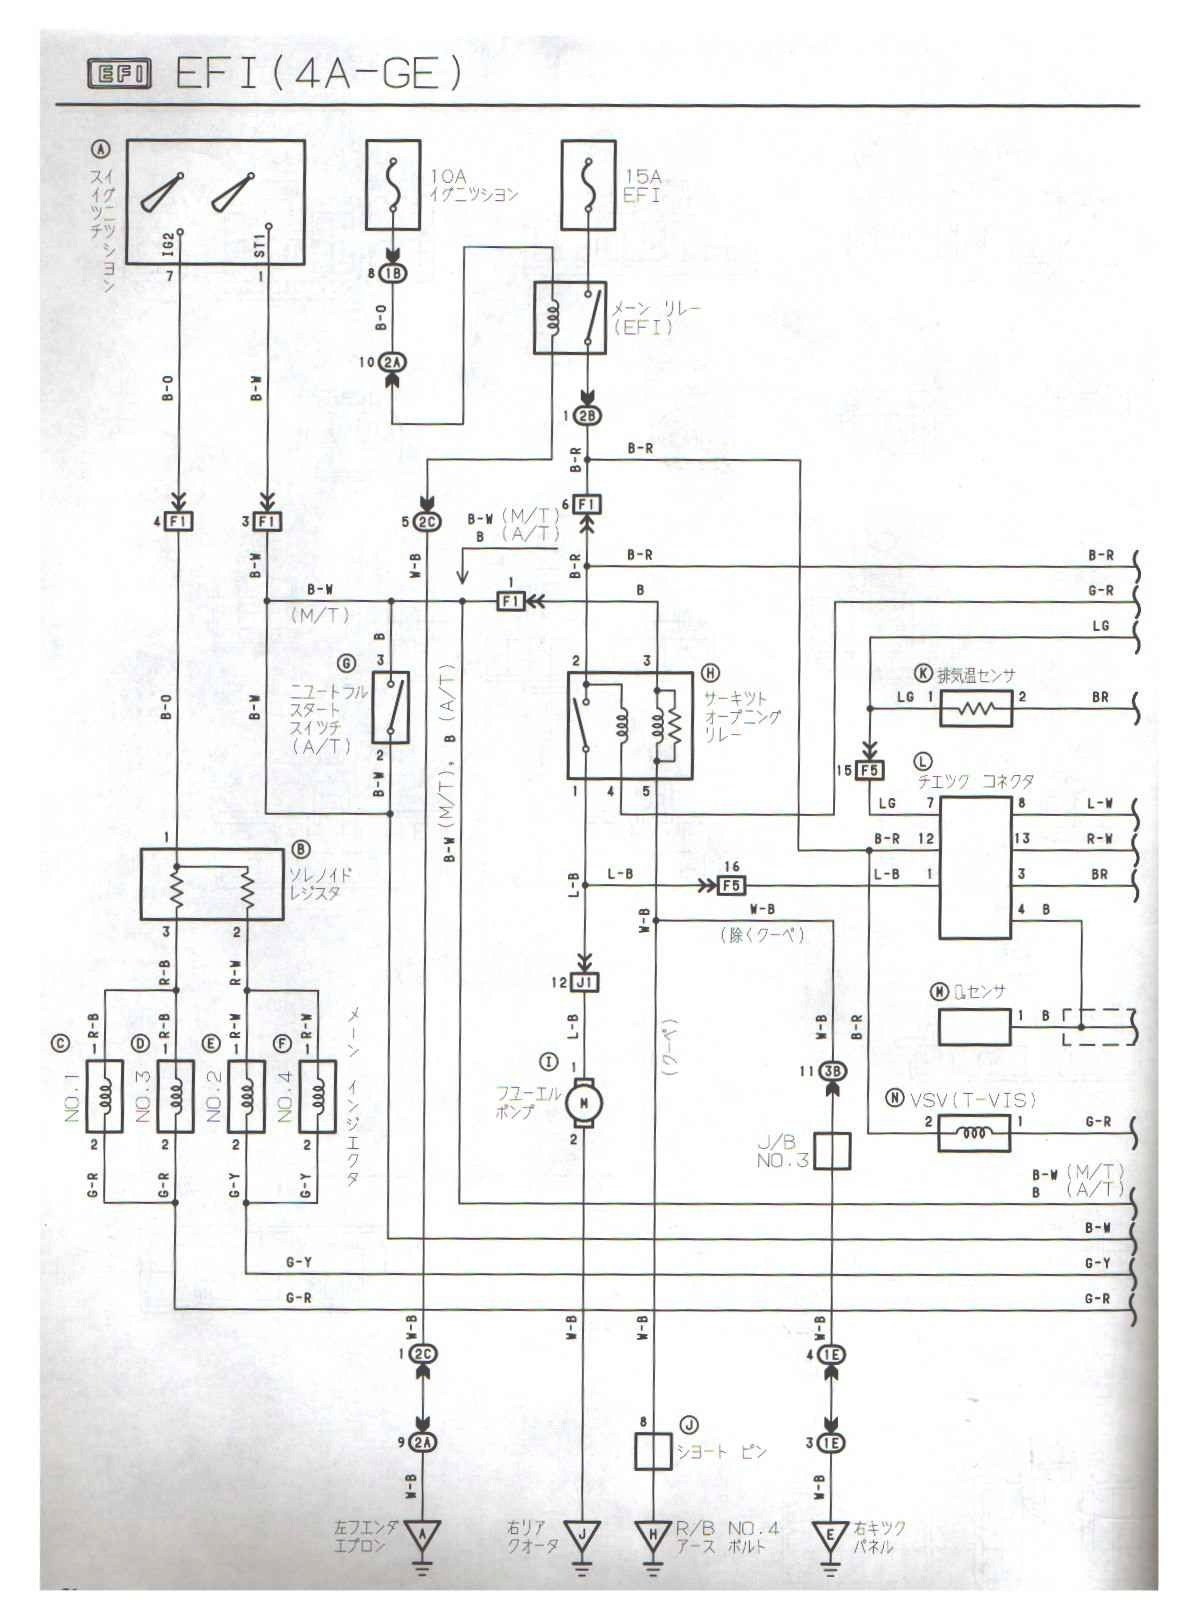 Pioneer Avic X930bt Wiring Diagram Best Pioneer Avic X930bt Wiring Diagram Lovely Nice Avic F900bt Wiring